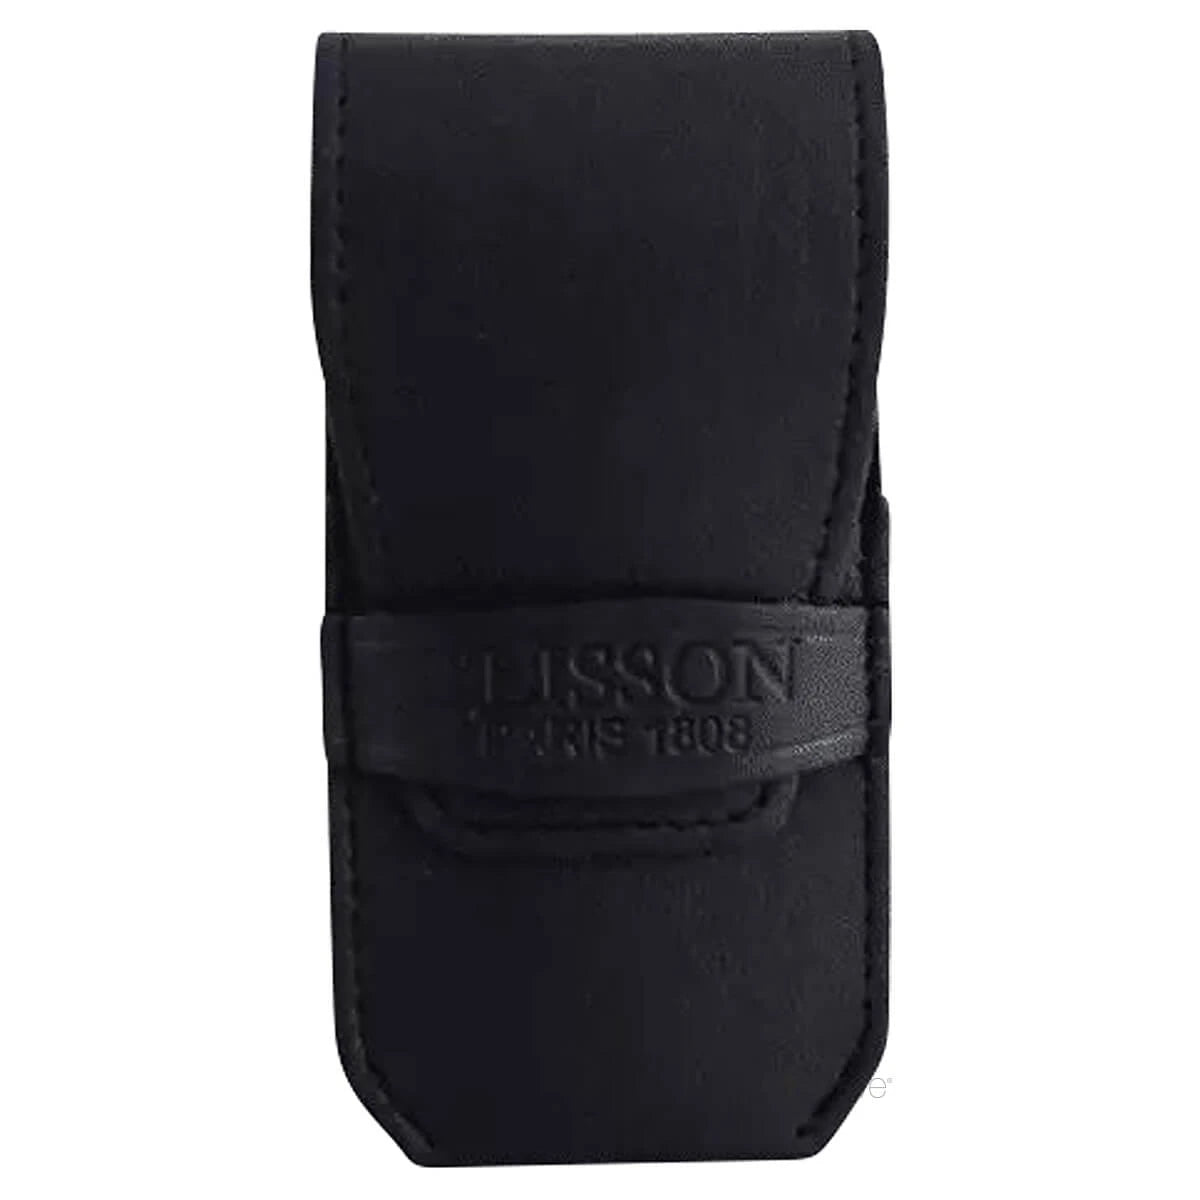 Plisson Manicure Set, Black Leather- 3 parts